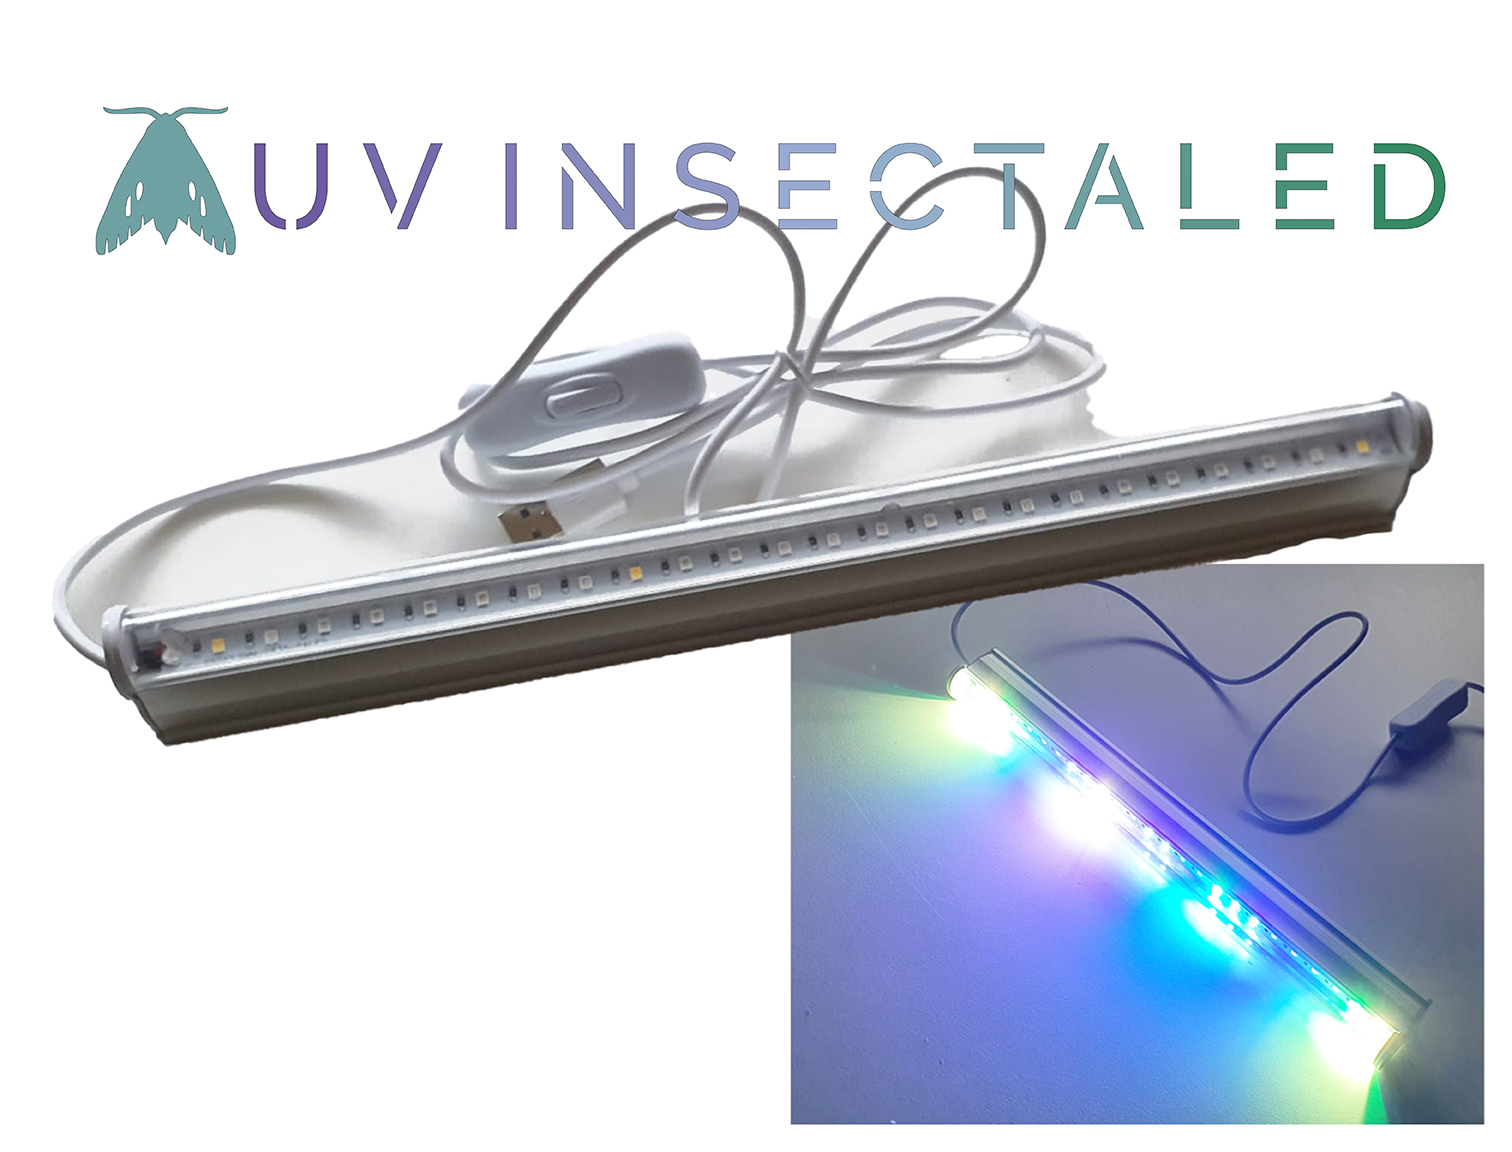 UV insectaLED LAMPweb